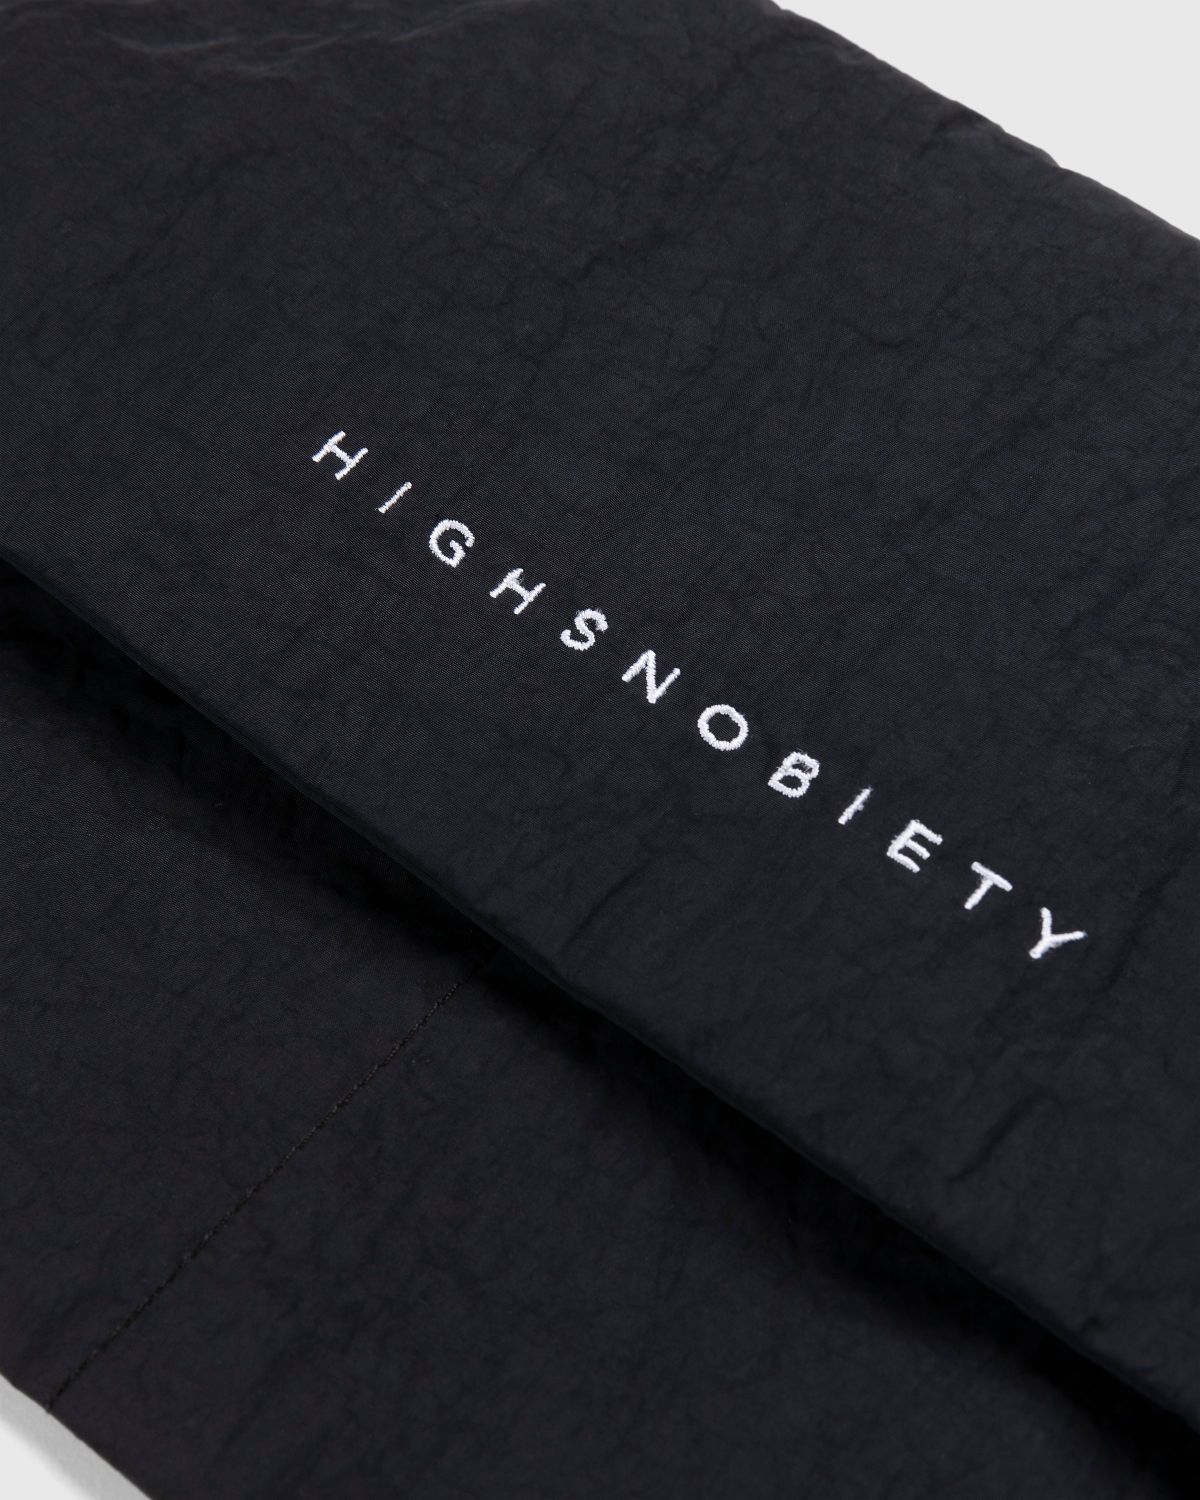 Highsnobiety – Nylon Side Bag Black - Pouches - Black - Image 5